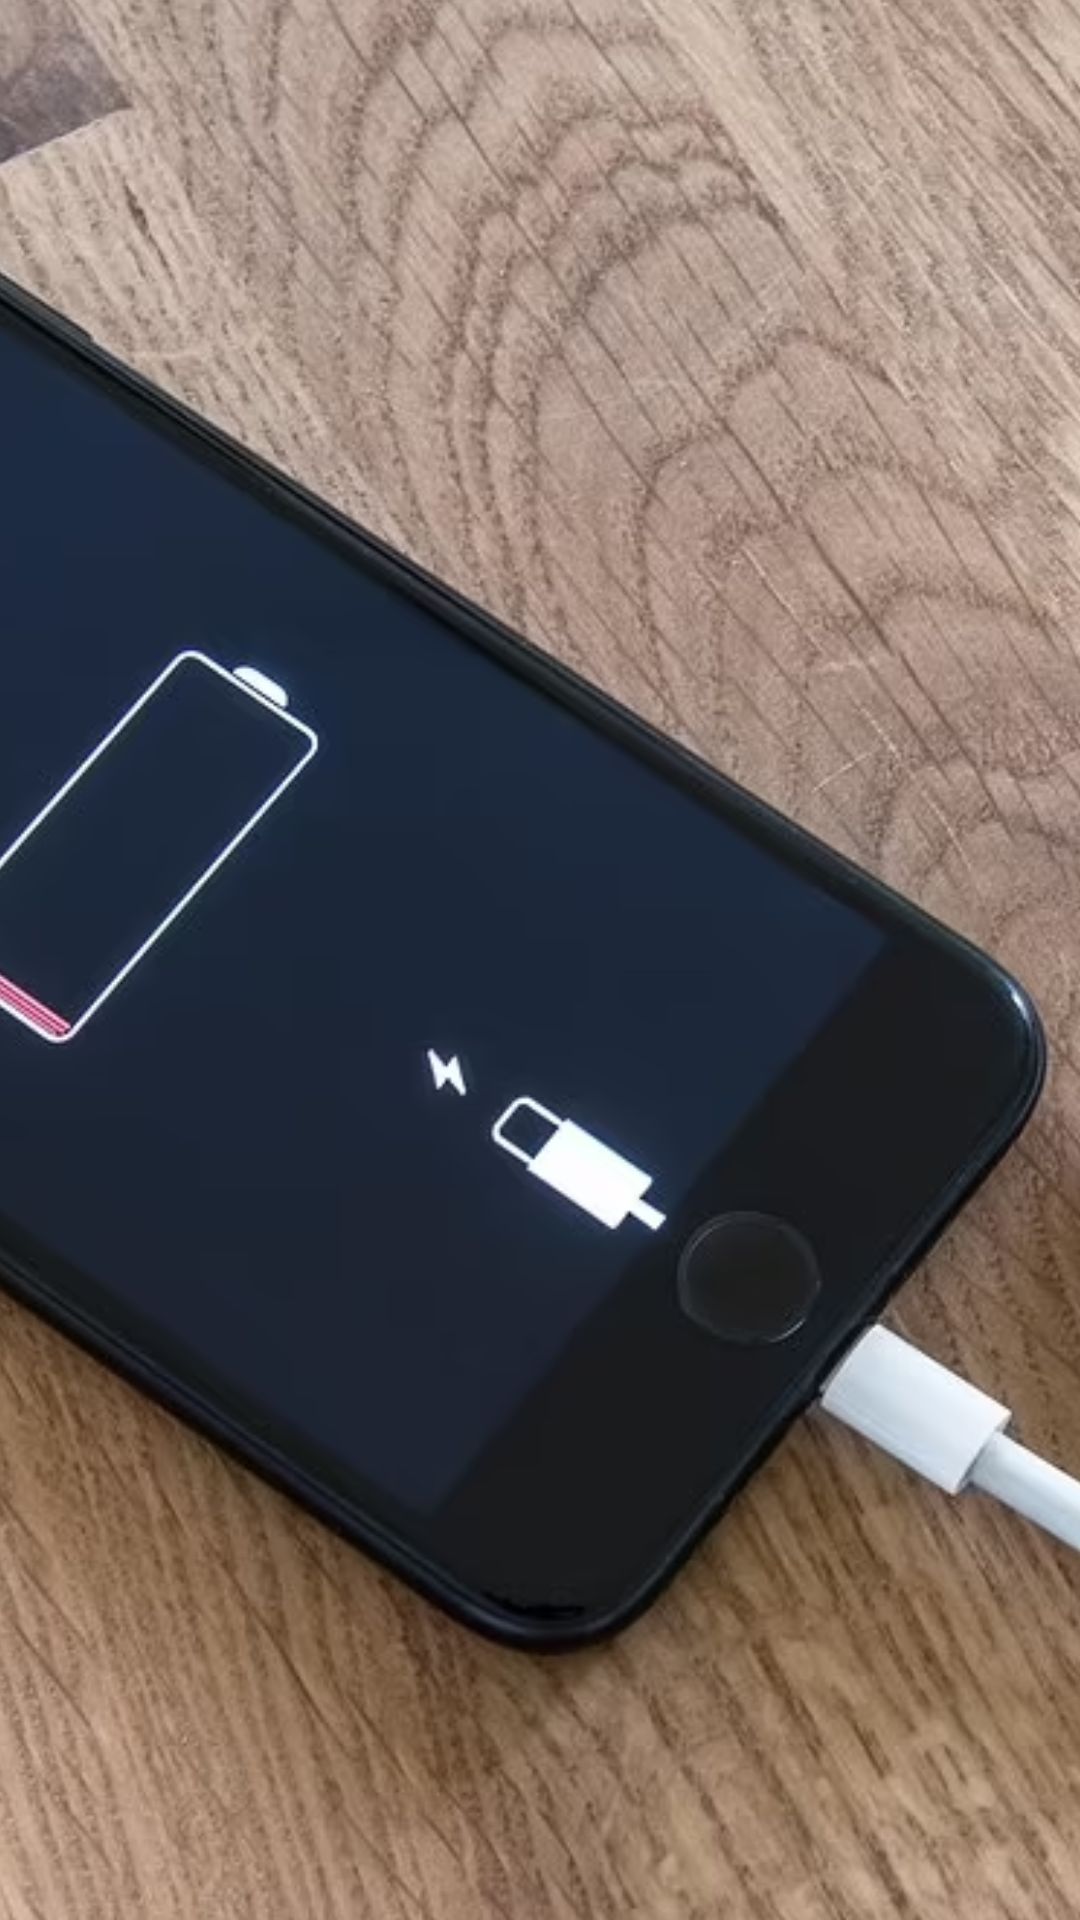 अपने स्मार्टफोन में कर लें यह छोटी सी सेटिंग्स, बढ़ जाएगी बैटरी की लाइफ